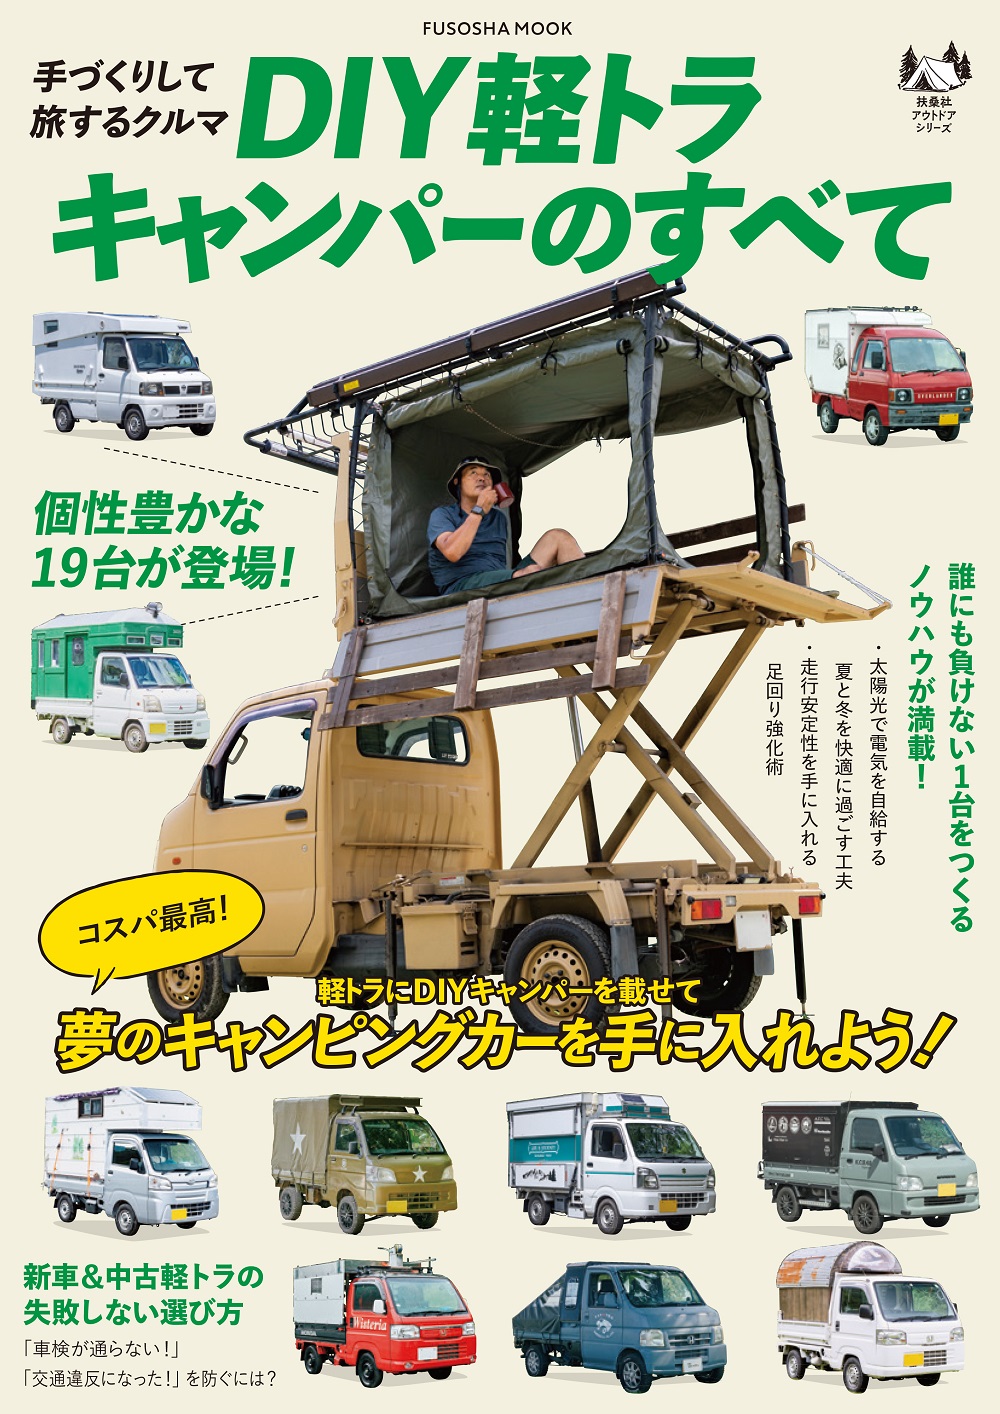 キャンピングカーが欲しいなら作ればいいじゃない！30万円から作れる「軽トラキャンパーDIY」の世界